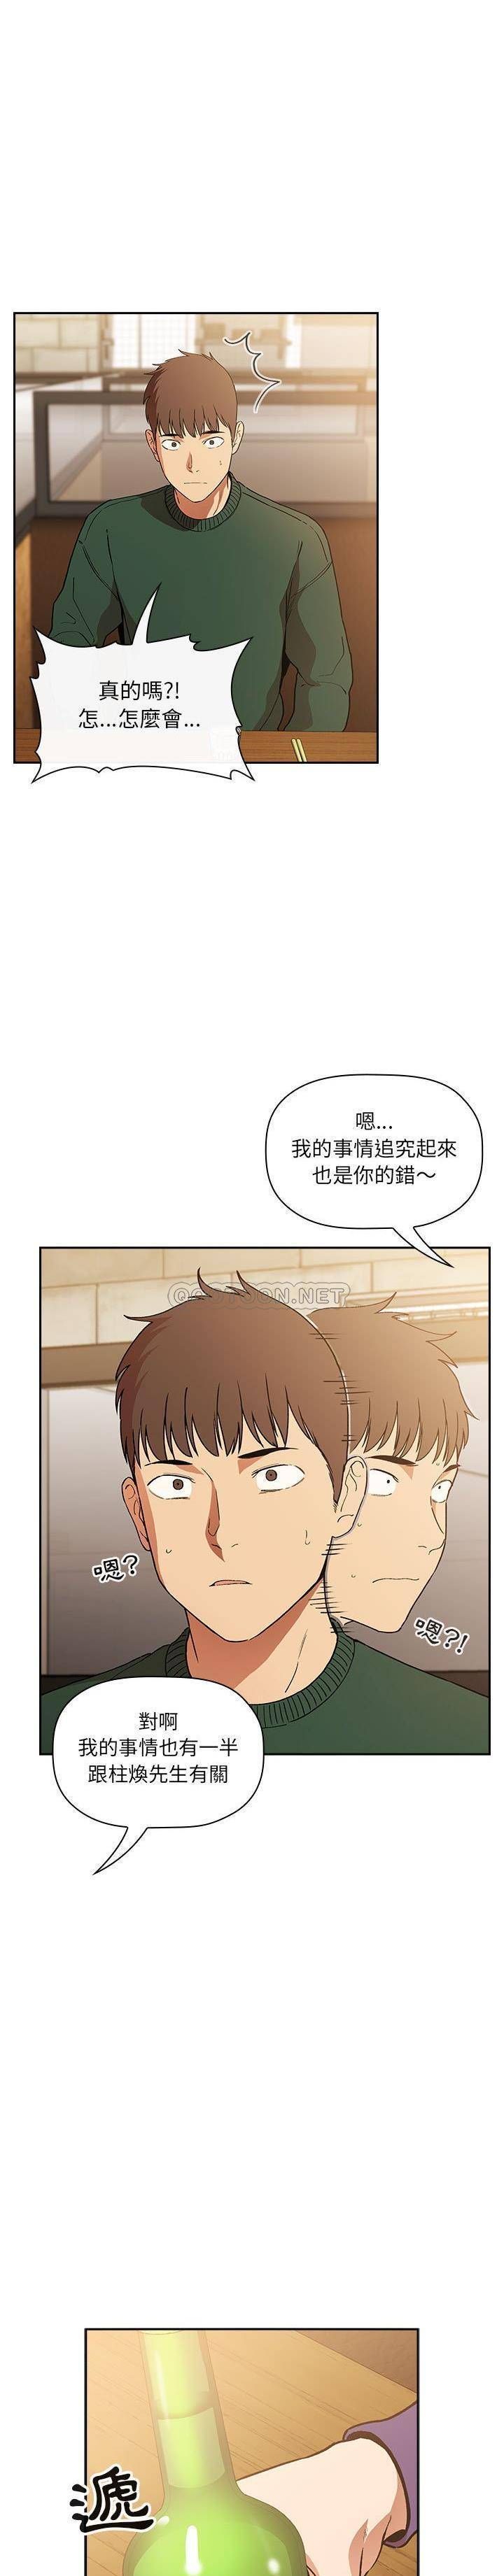 韩国污漫画 BJ的夢幻直播 第28话 20